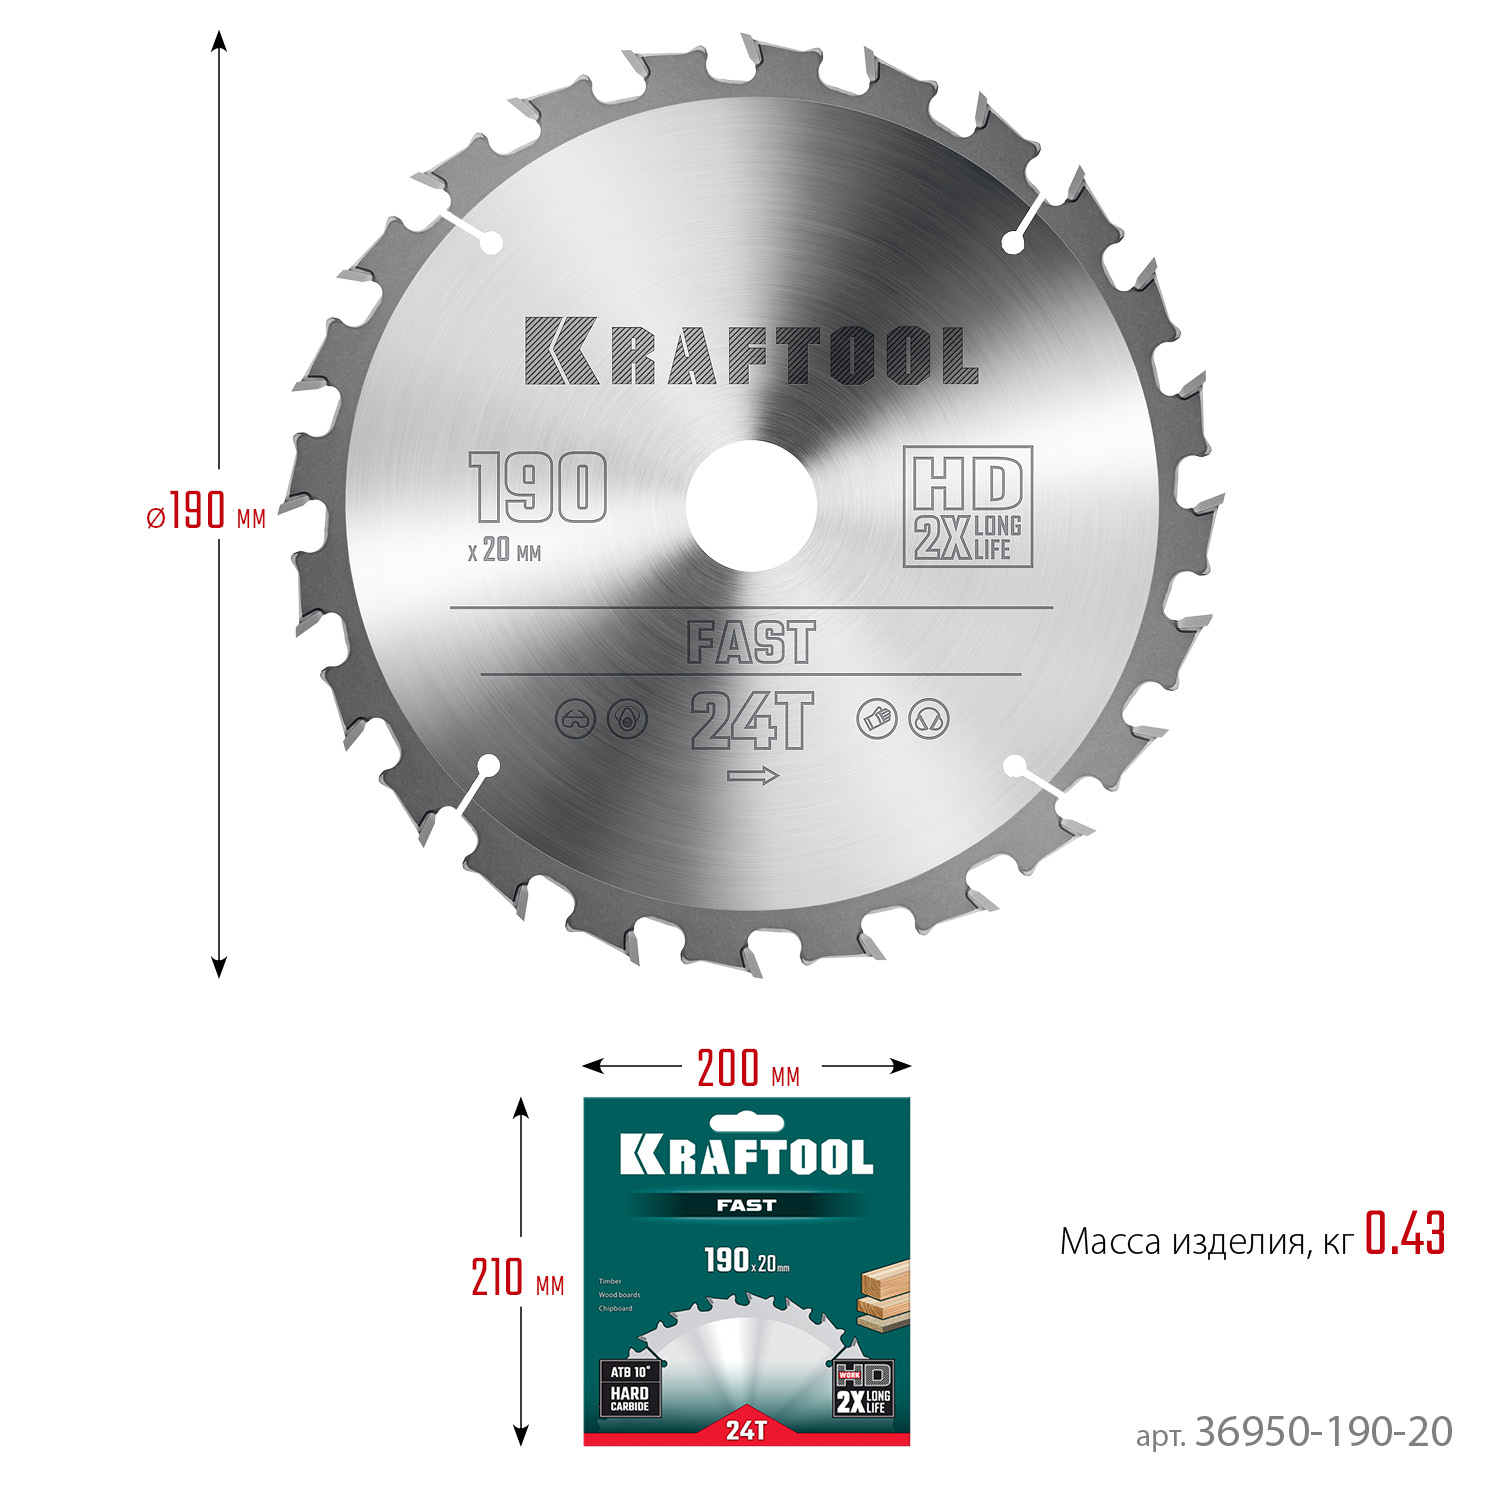 KRAFTOOL Fast, 190 х 20 мм, 24Т, пильный диск по дереву (36950-190-20)